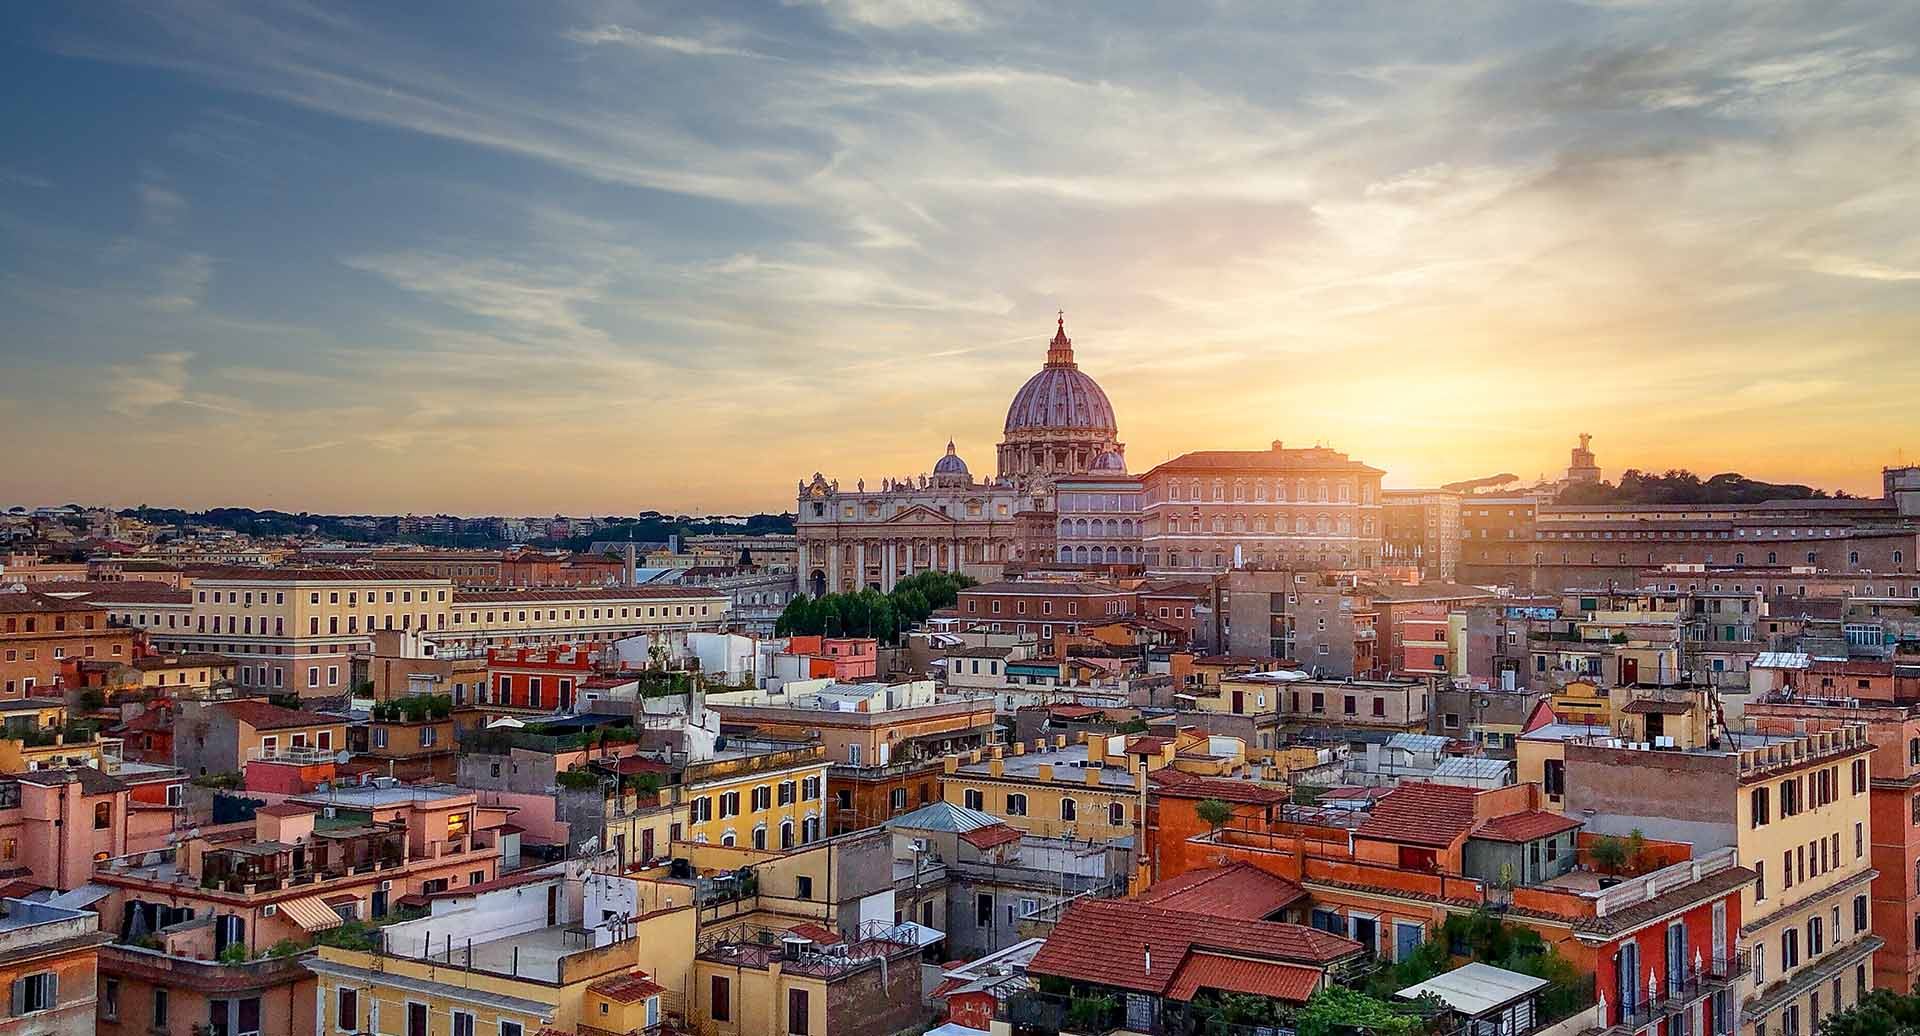 Imagem de um plano aéreo da cidade de Roma. Em primeiro plano, há vários edifícios residenciais, enquanto o plano de fundo mostra vários monumentos romanos e o pôr do sol atrás deles.